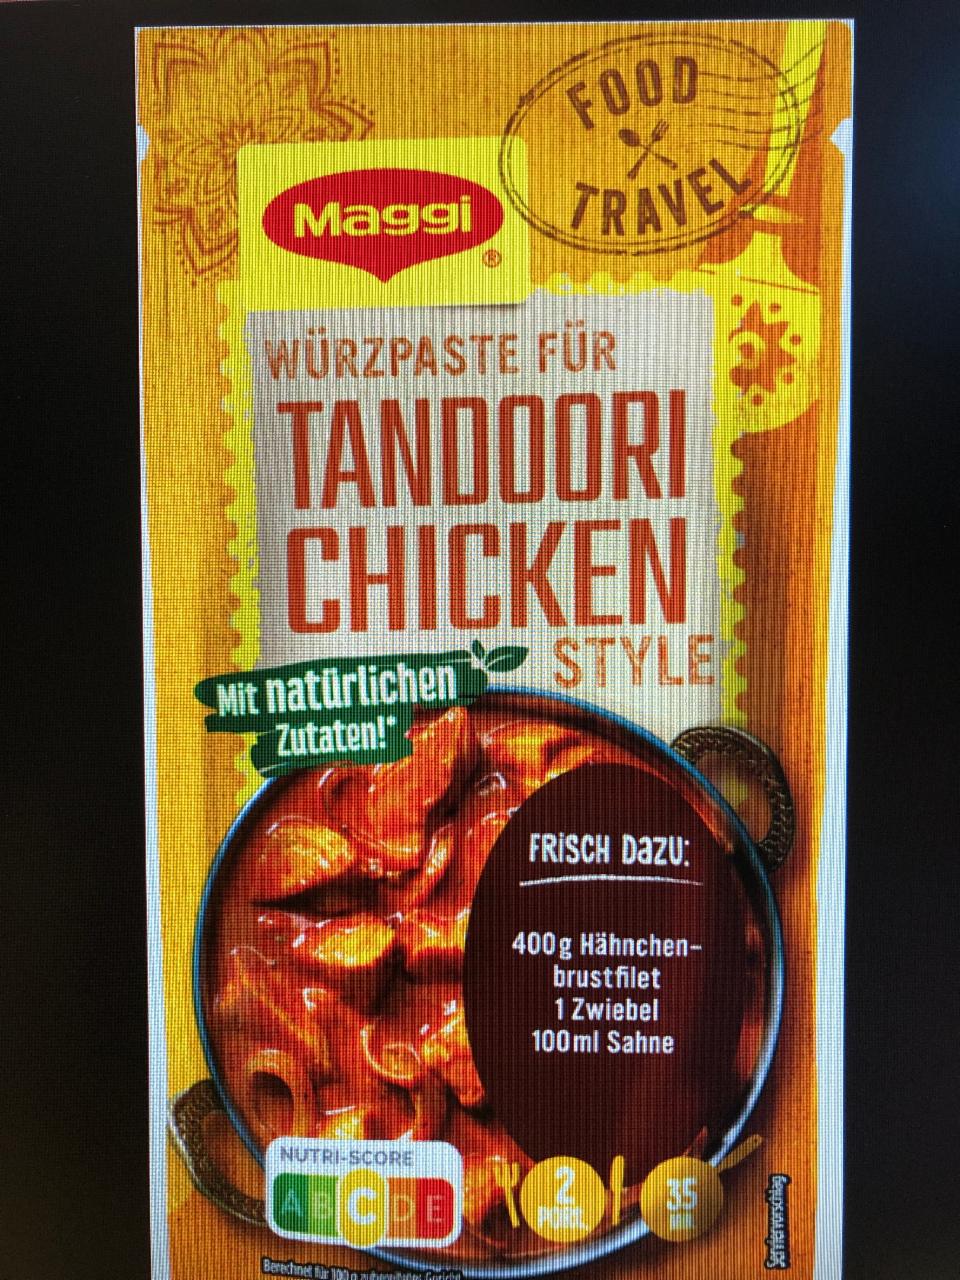 Fotografie - Würzpaste für Tandoori Chicken style Maggi